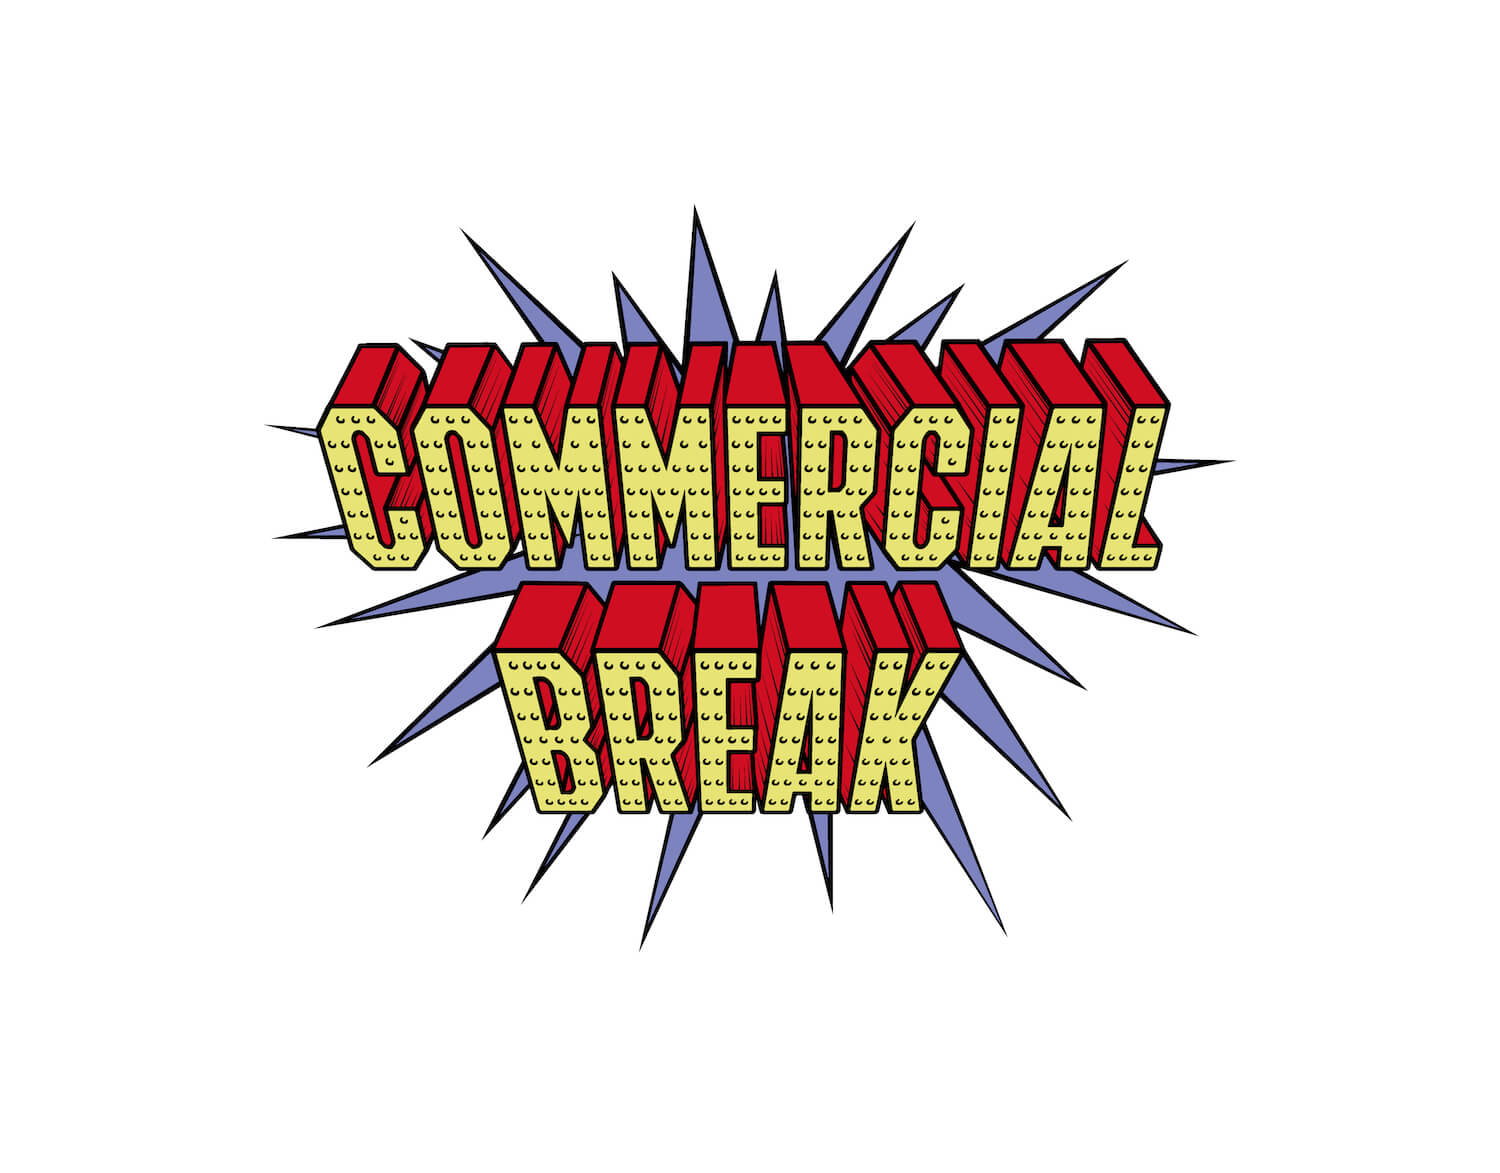 ジョシュア・ヴィーダスの世界初となる、モノクロじゃない個展「Commercial Break」。